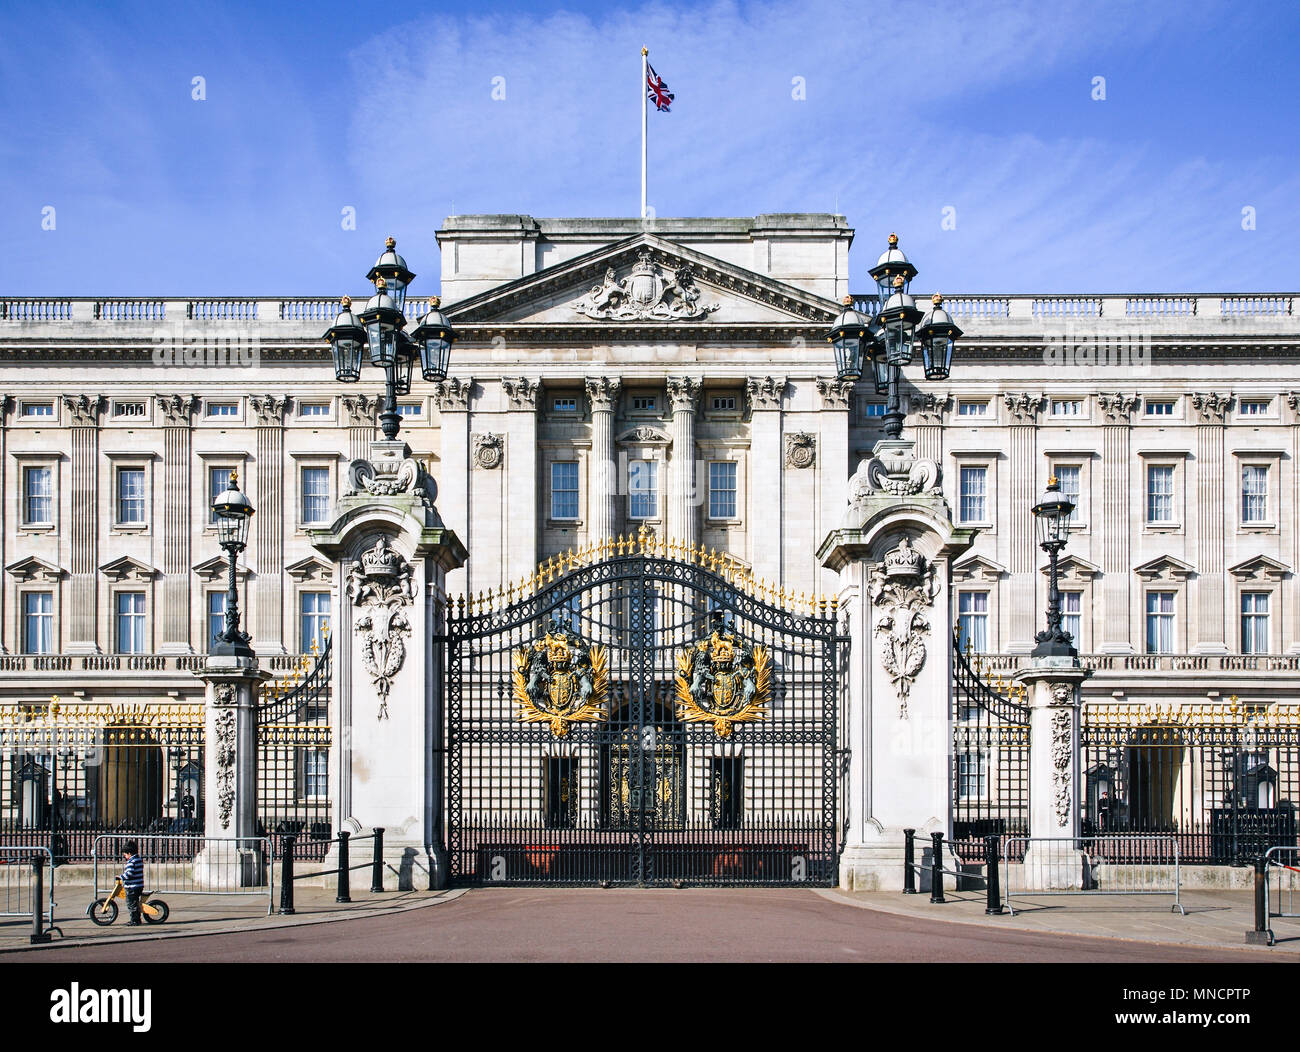 Buckingham Palace. London Iconic Landmarks, London, United Kingdom. Architect: n/a, 2011. Stock Photo